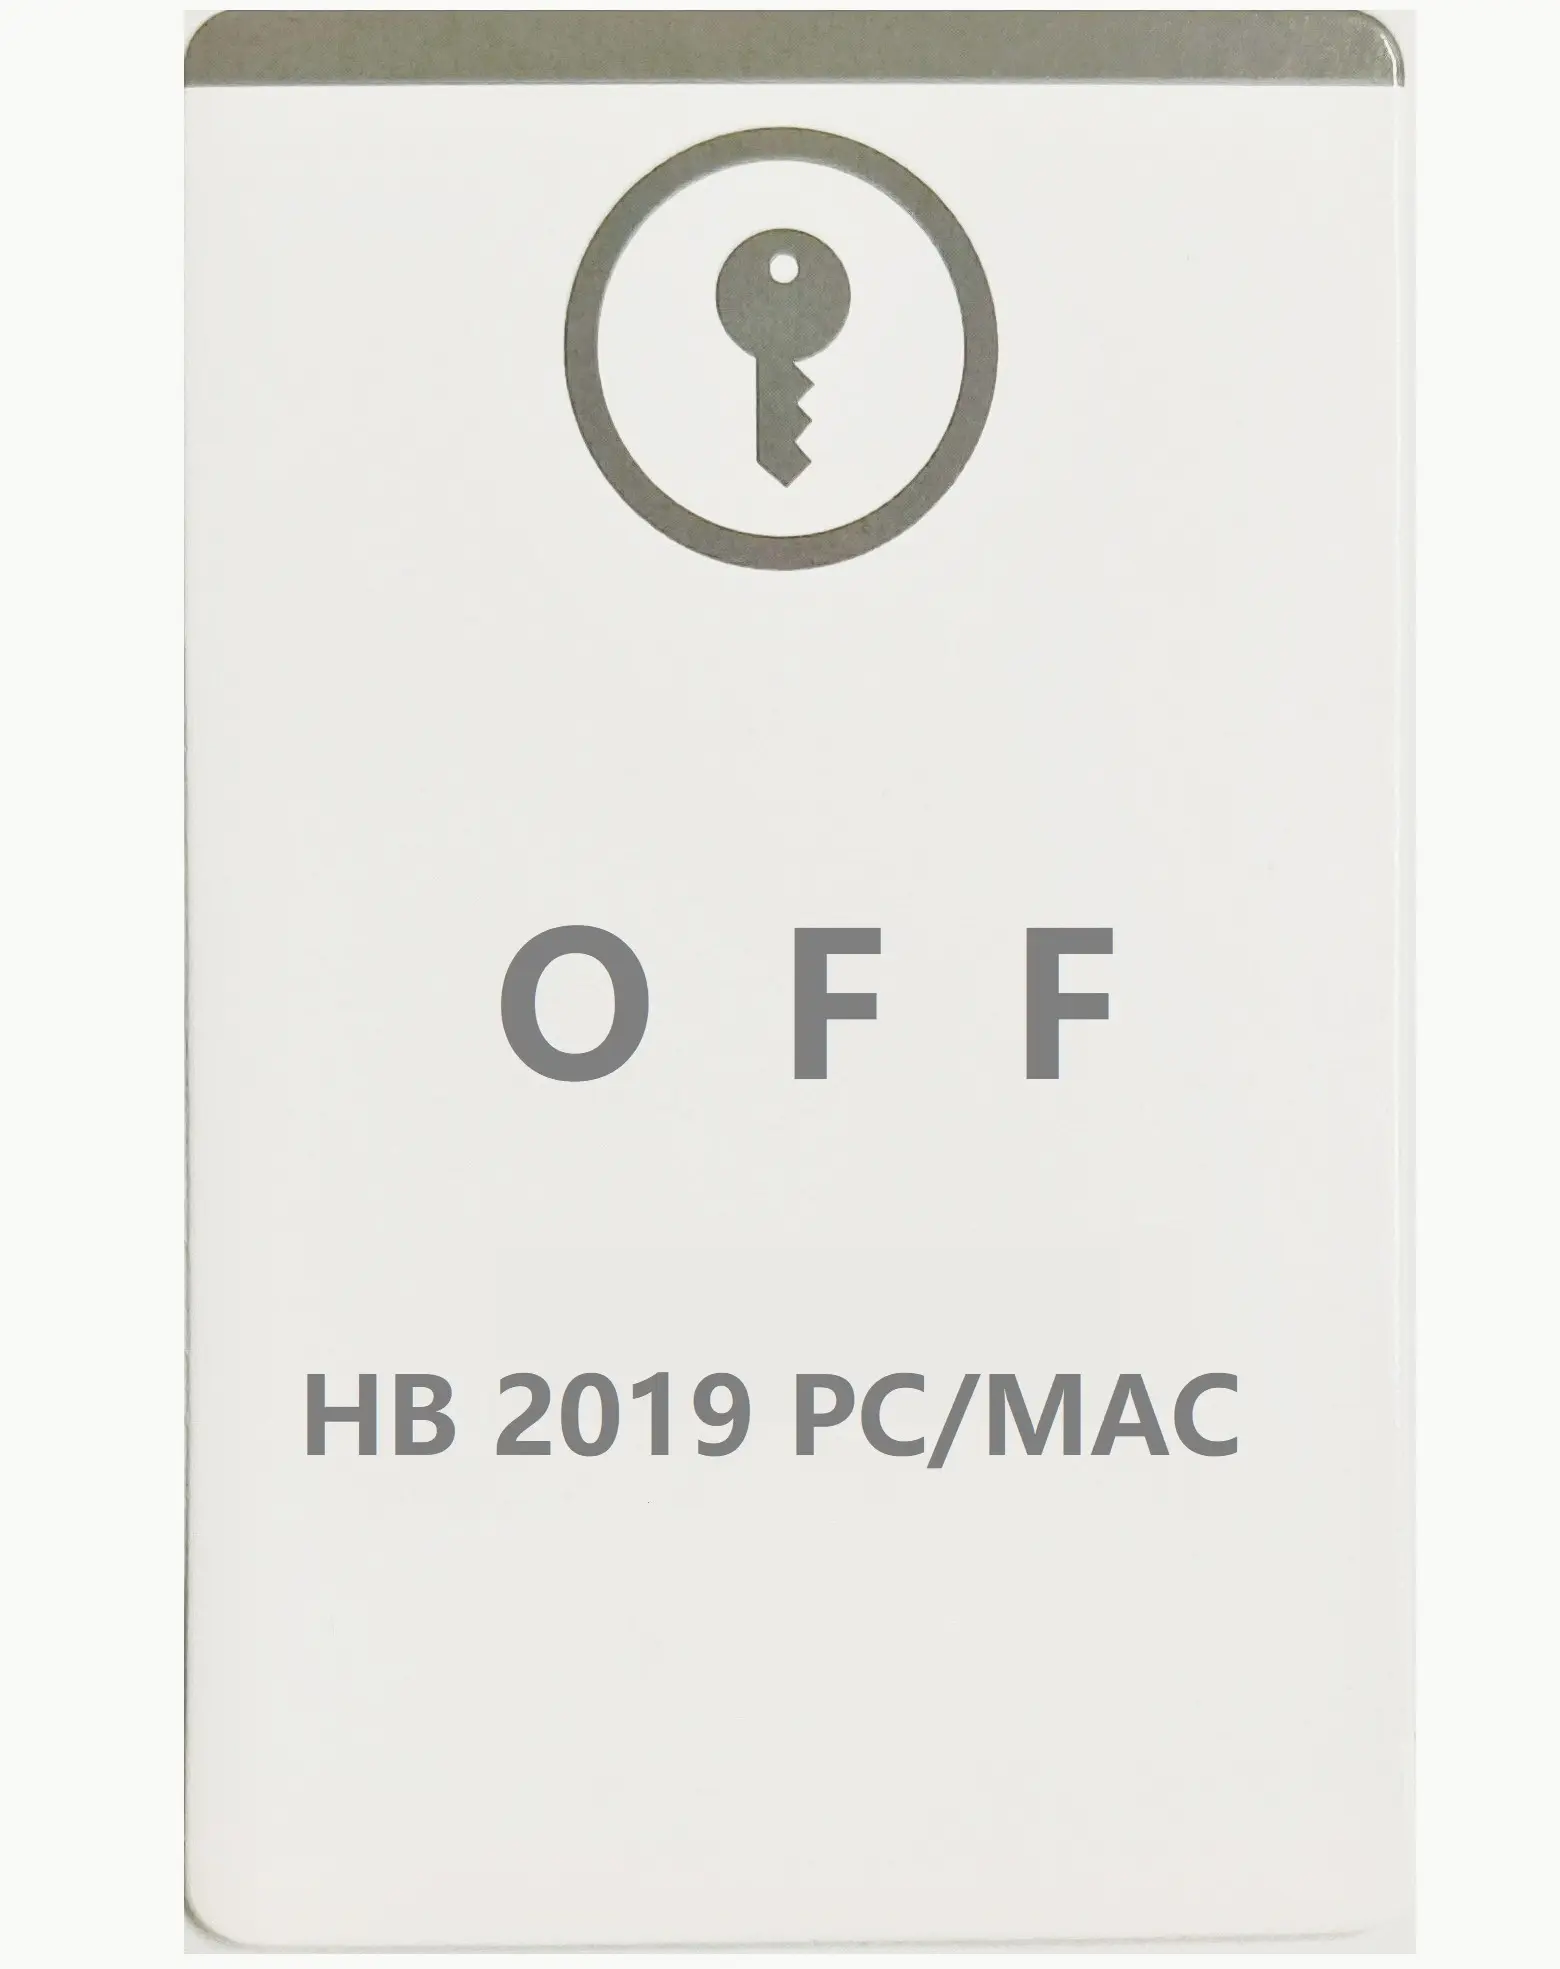 OFF 2019 HB Hors version PC/Mac 2019 pour la maison et l'entreprise